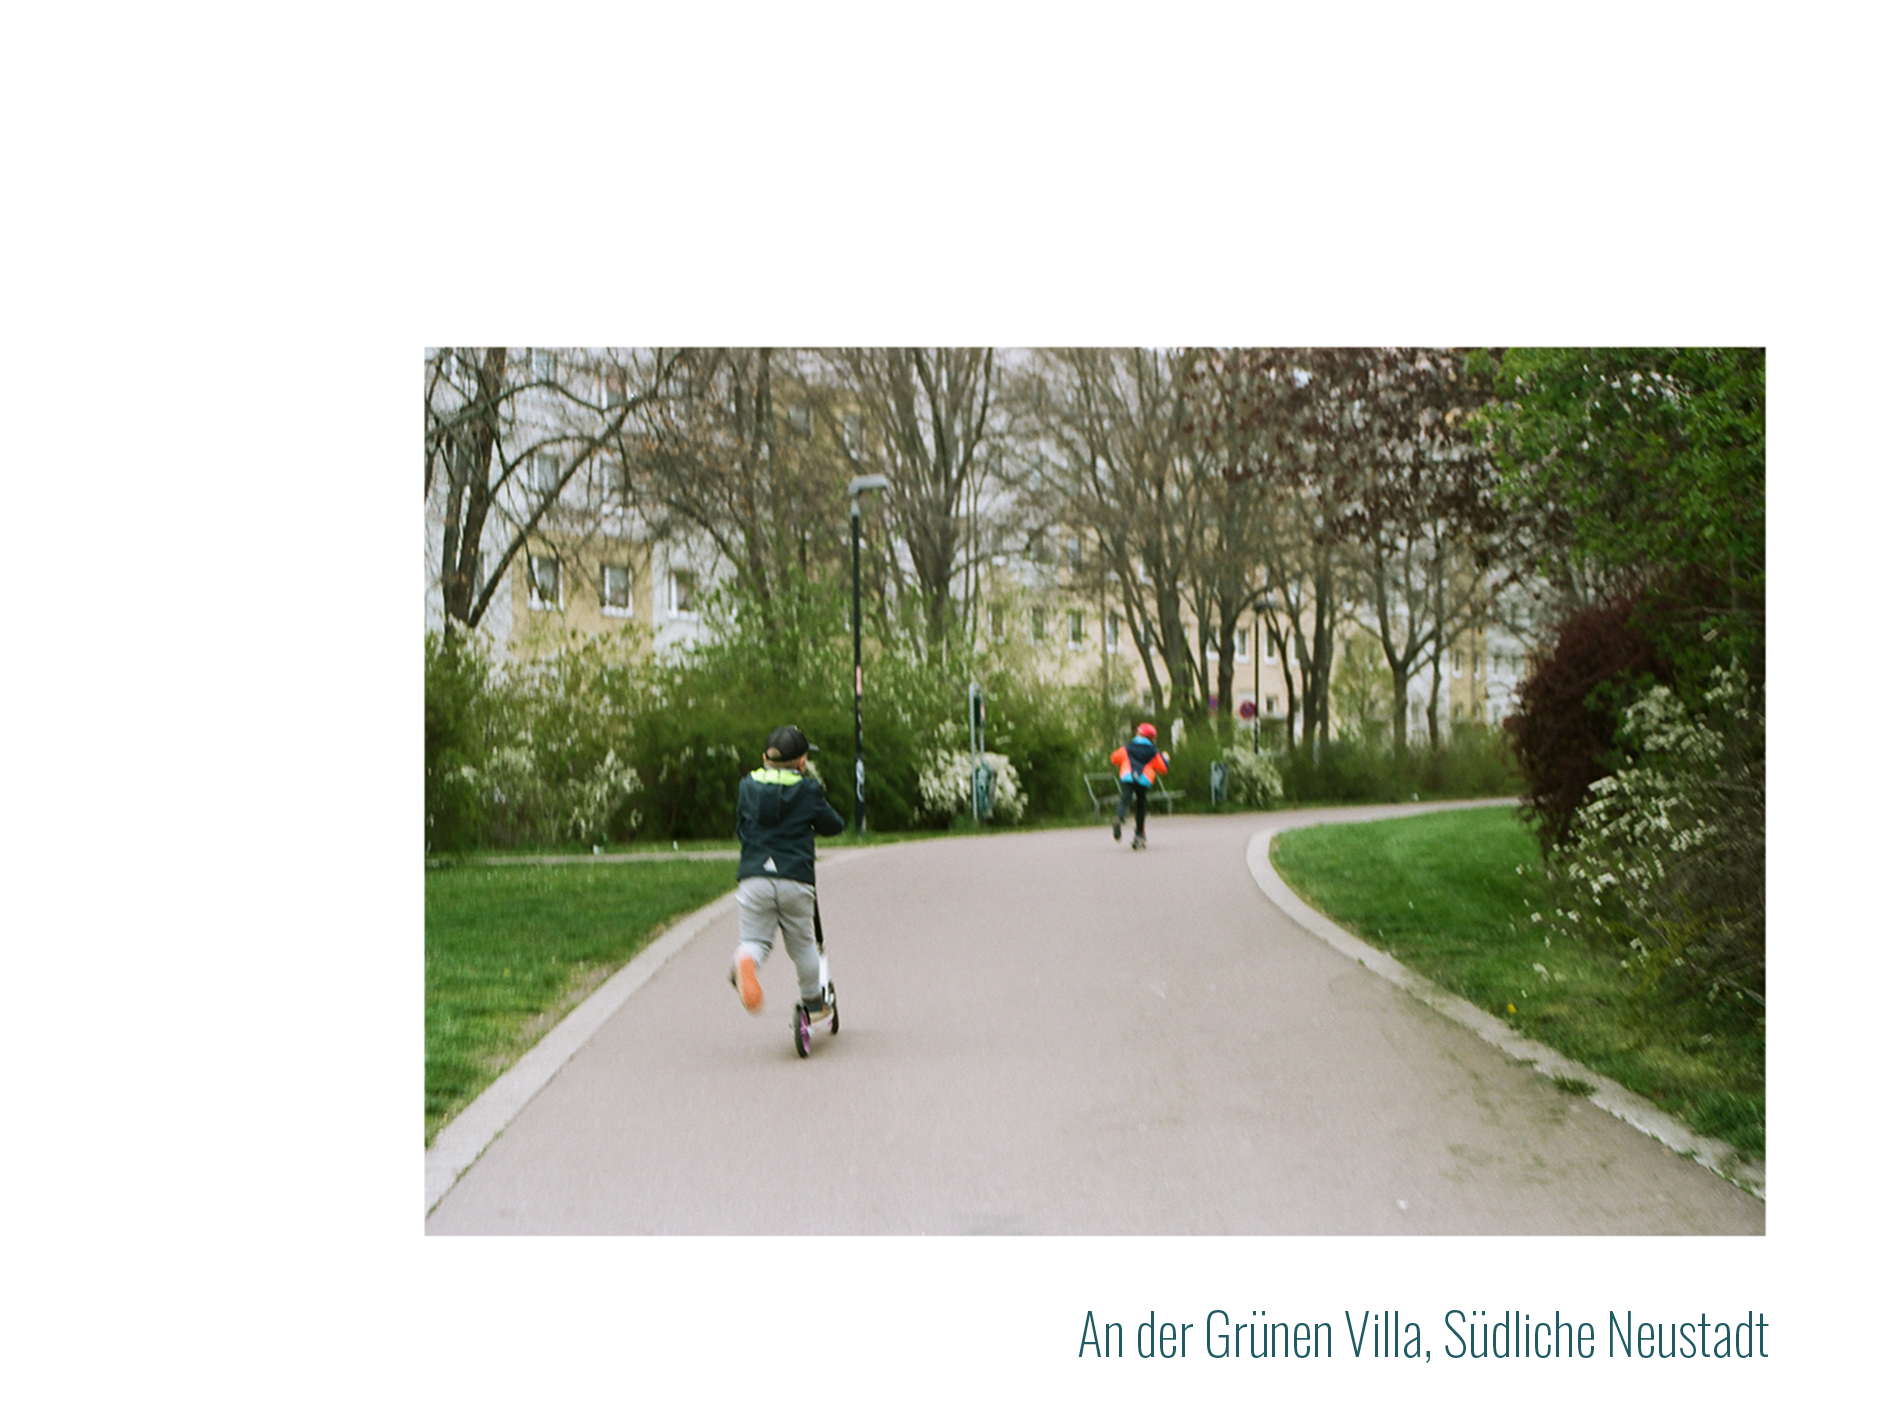 Kulturzentrum Grüne Erde:
            Zwei kleine Jungs fahren auf Rollern einen Gehweg im Park entlang.
            Sie sind von hinten und in Bewegung fotografiert.